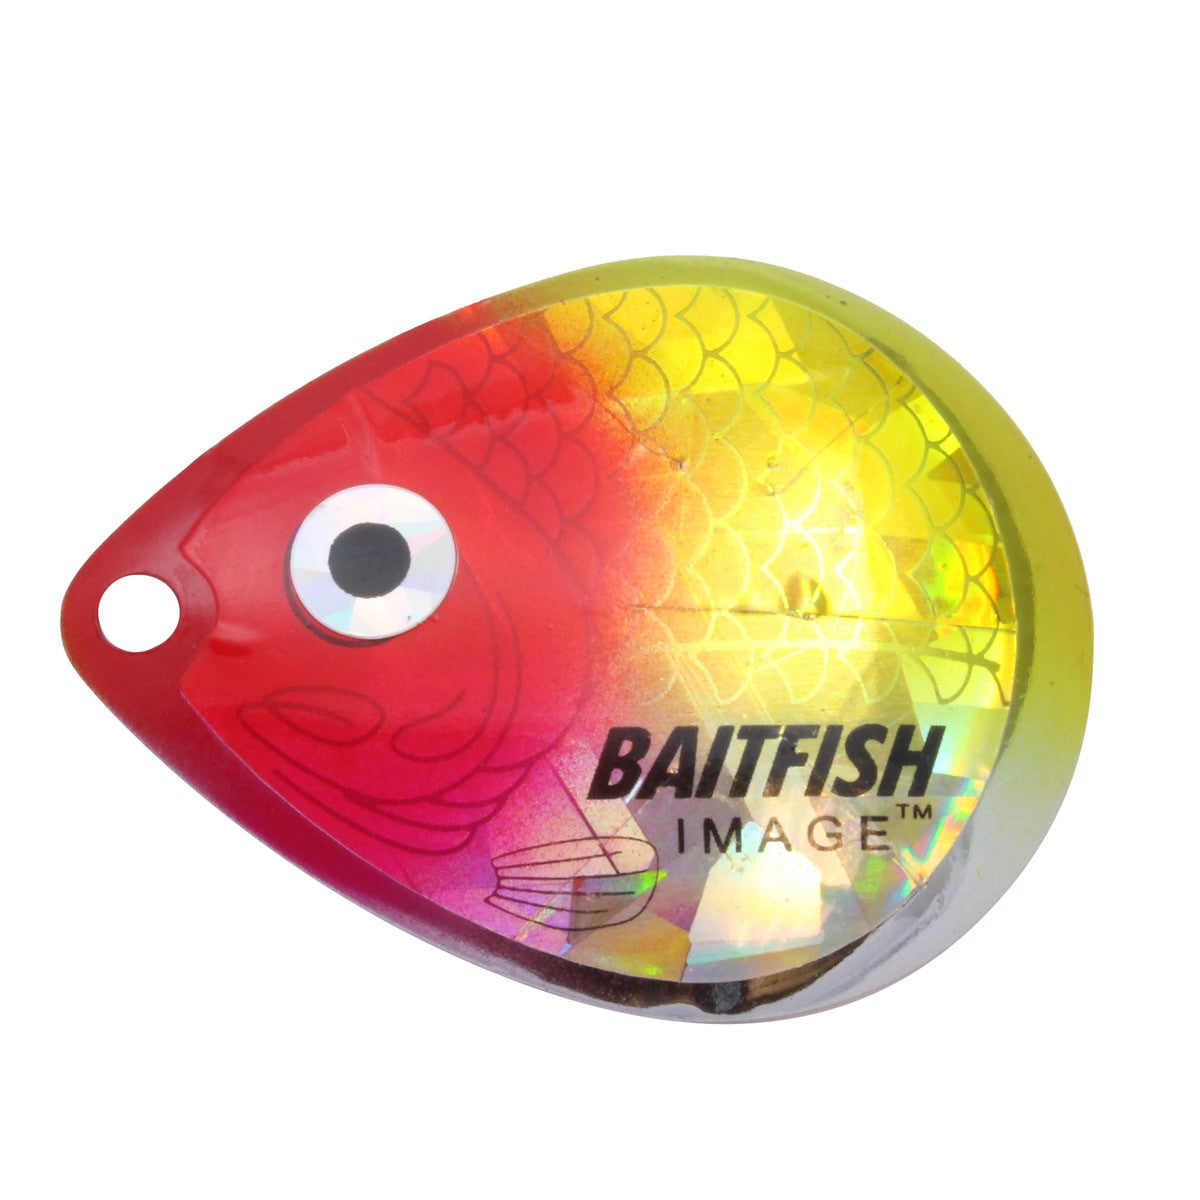 Northland Baitfish-Image Colorado Blades - #4 - Clown